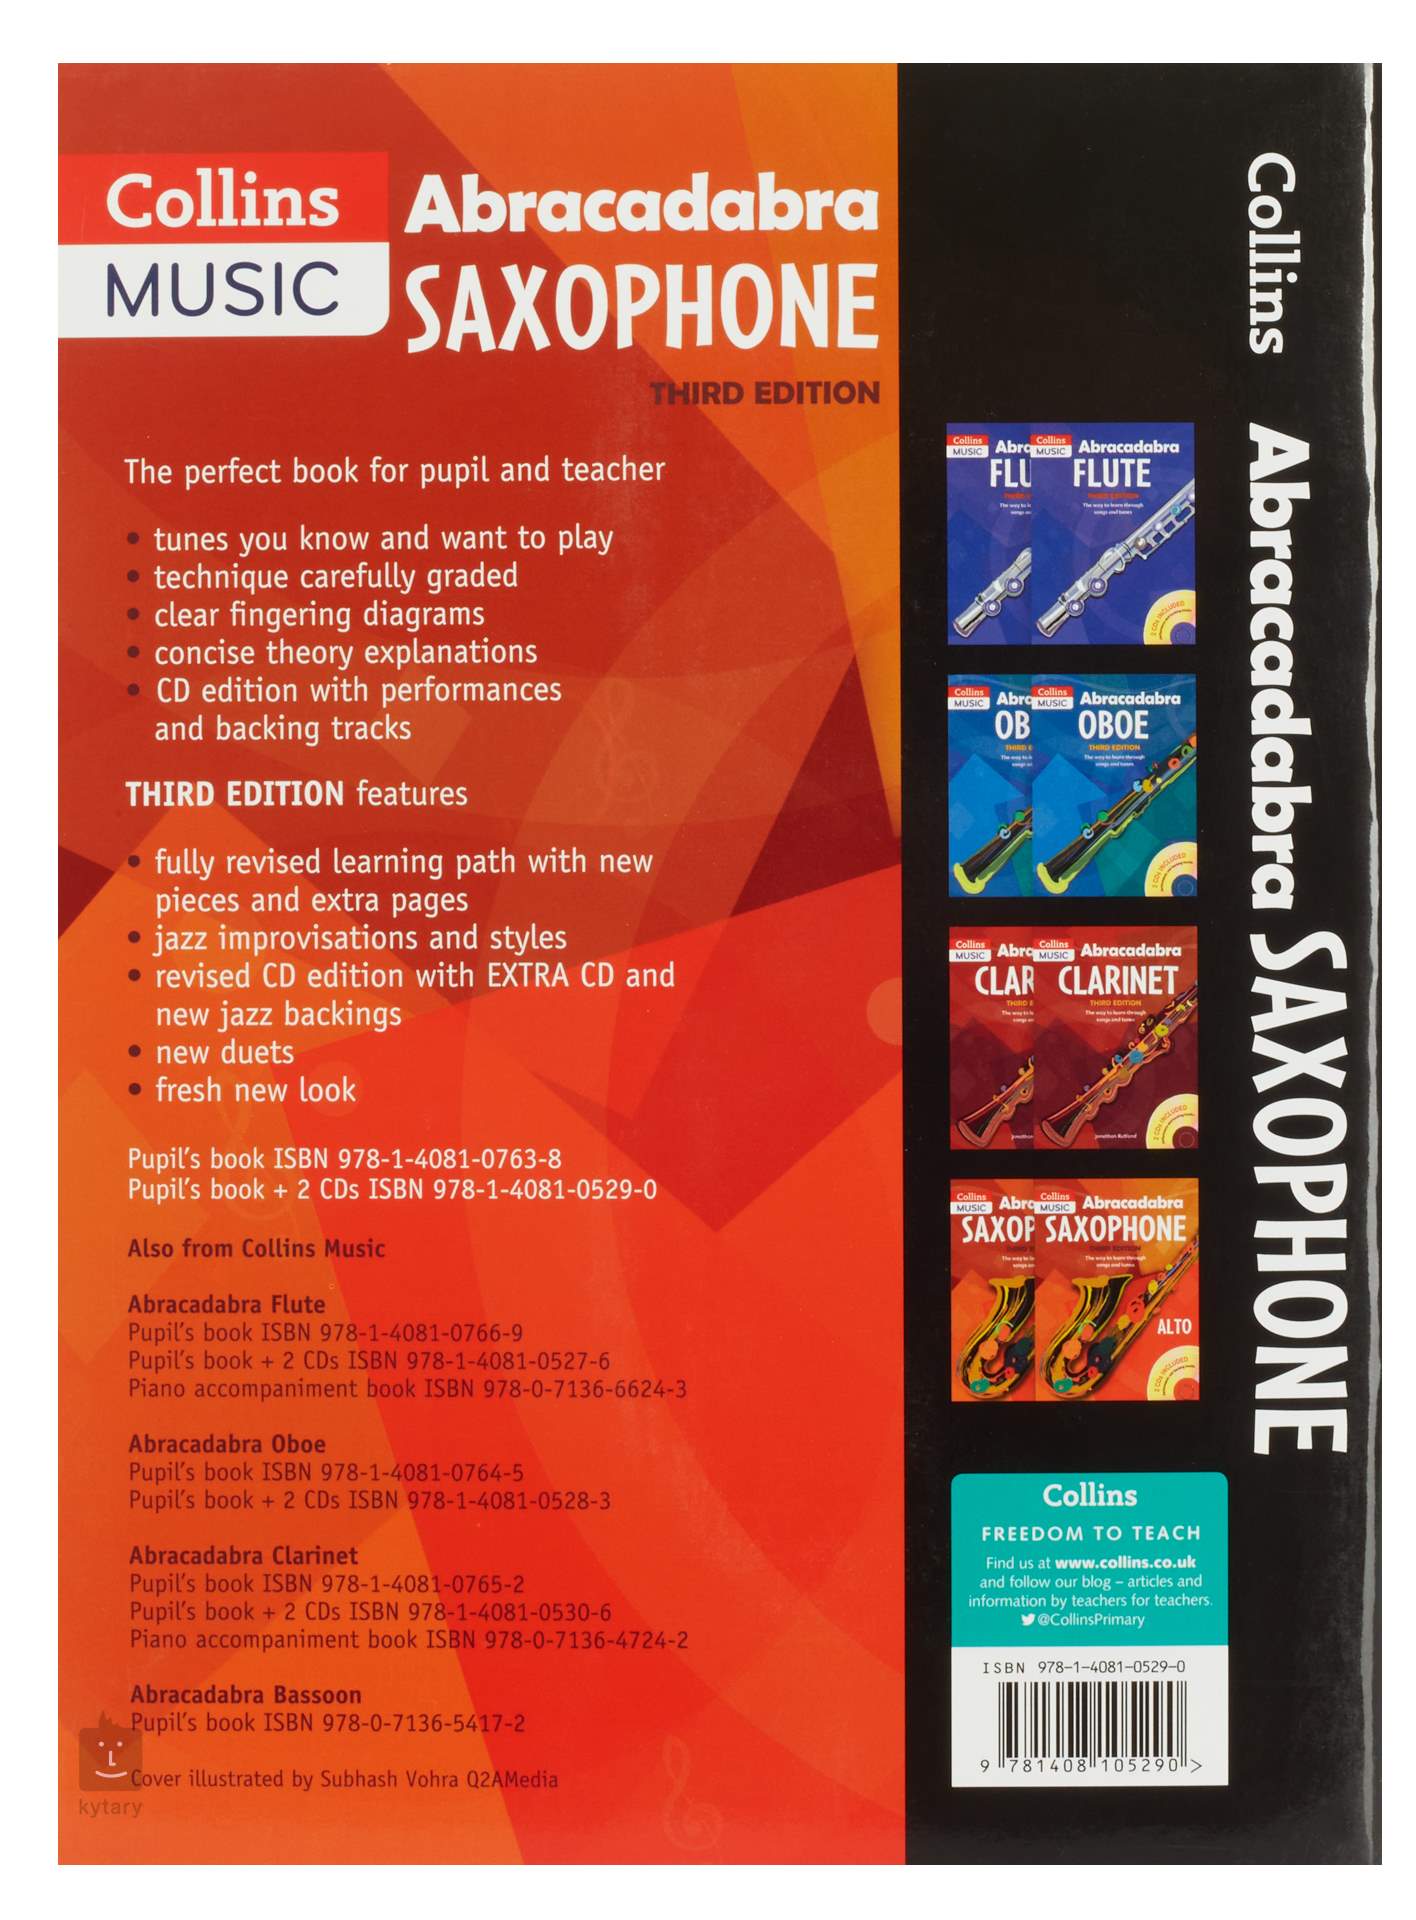 MS Abracadabra Saxophone Alto Partition pour saxophone